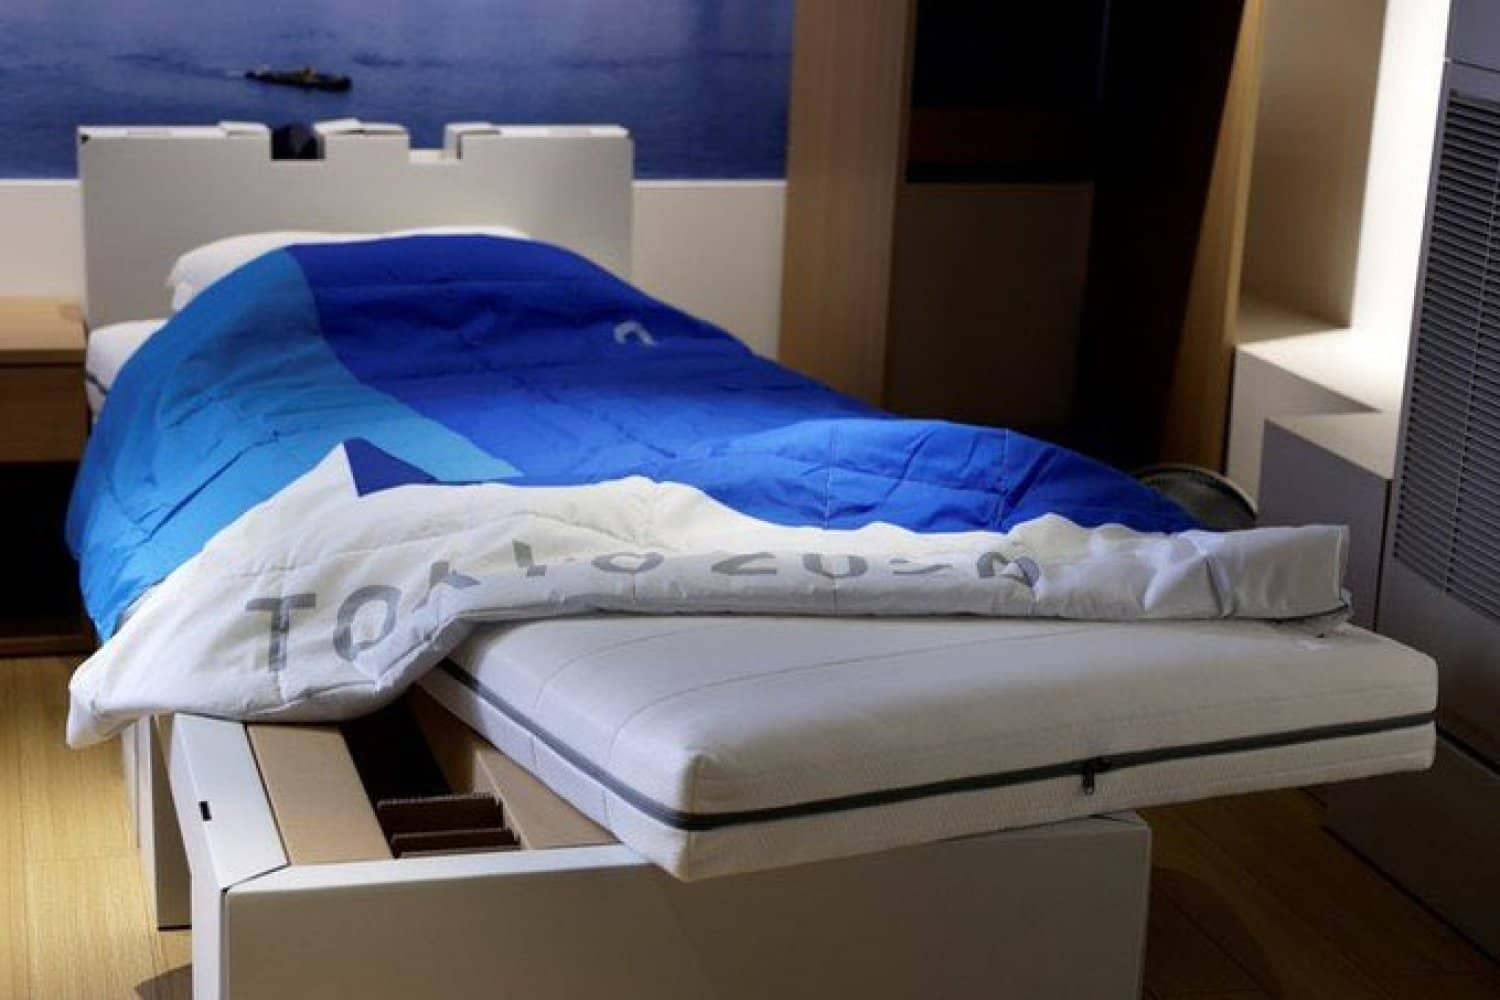 Los atletas dormirán en estas camas para evitar que tengan sexo.